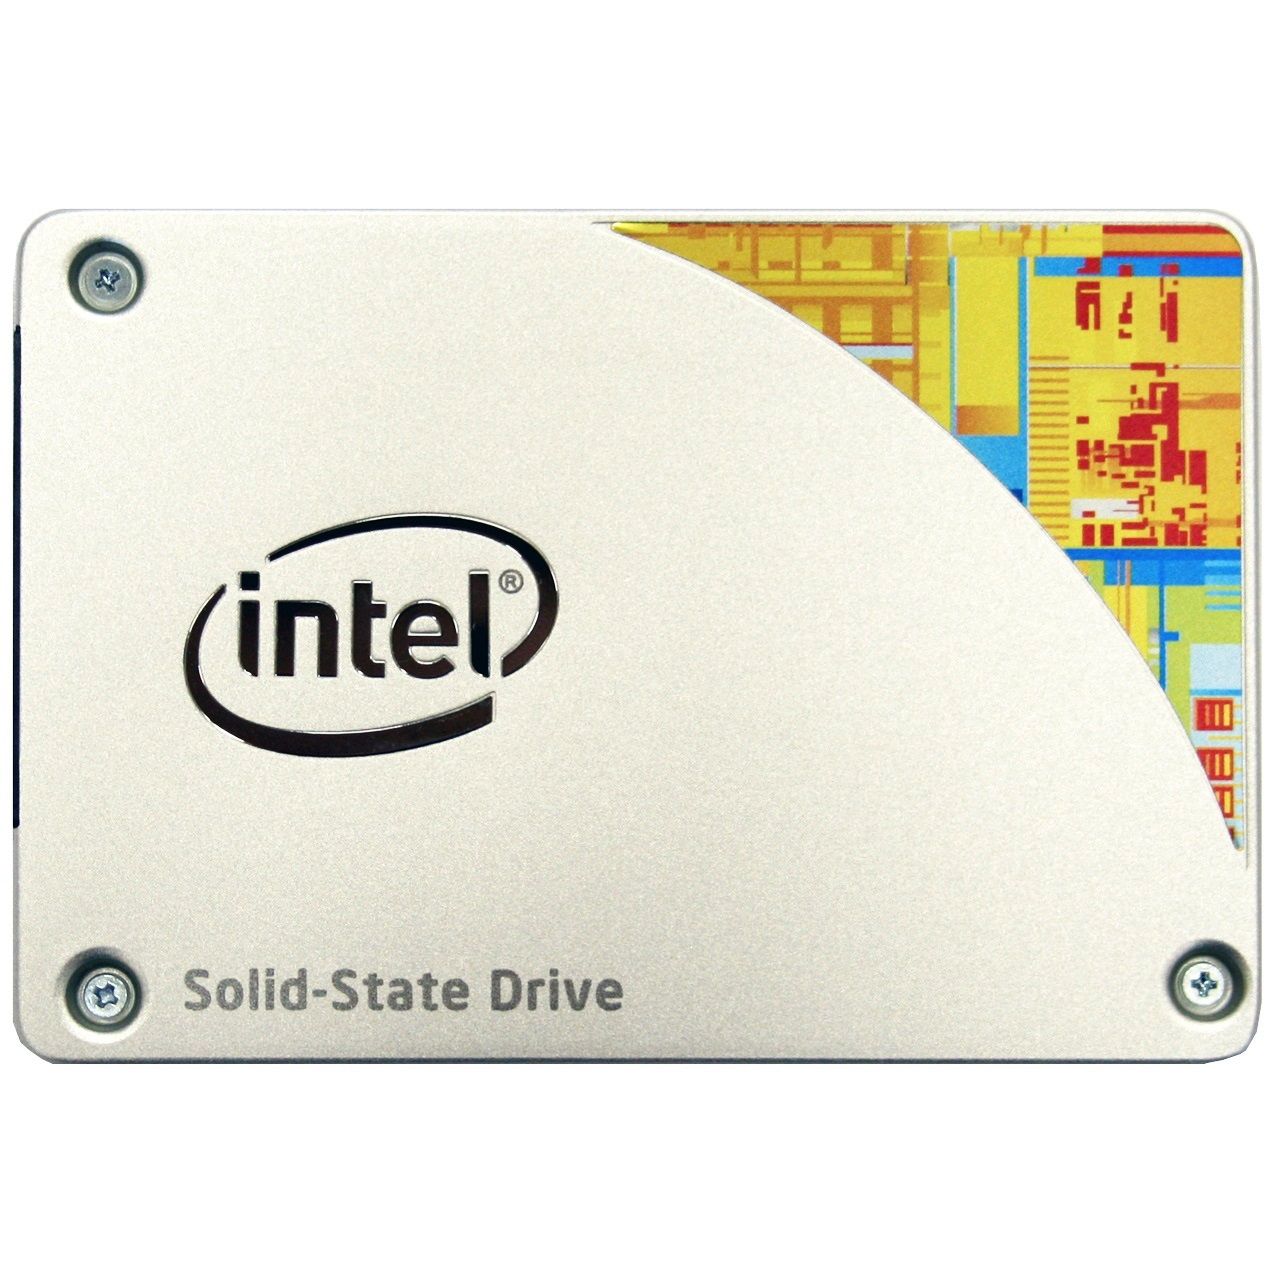  SSD Intel 535 Series, 120GB, 2.5", SATA III 